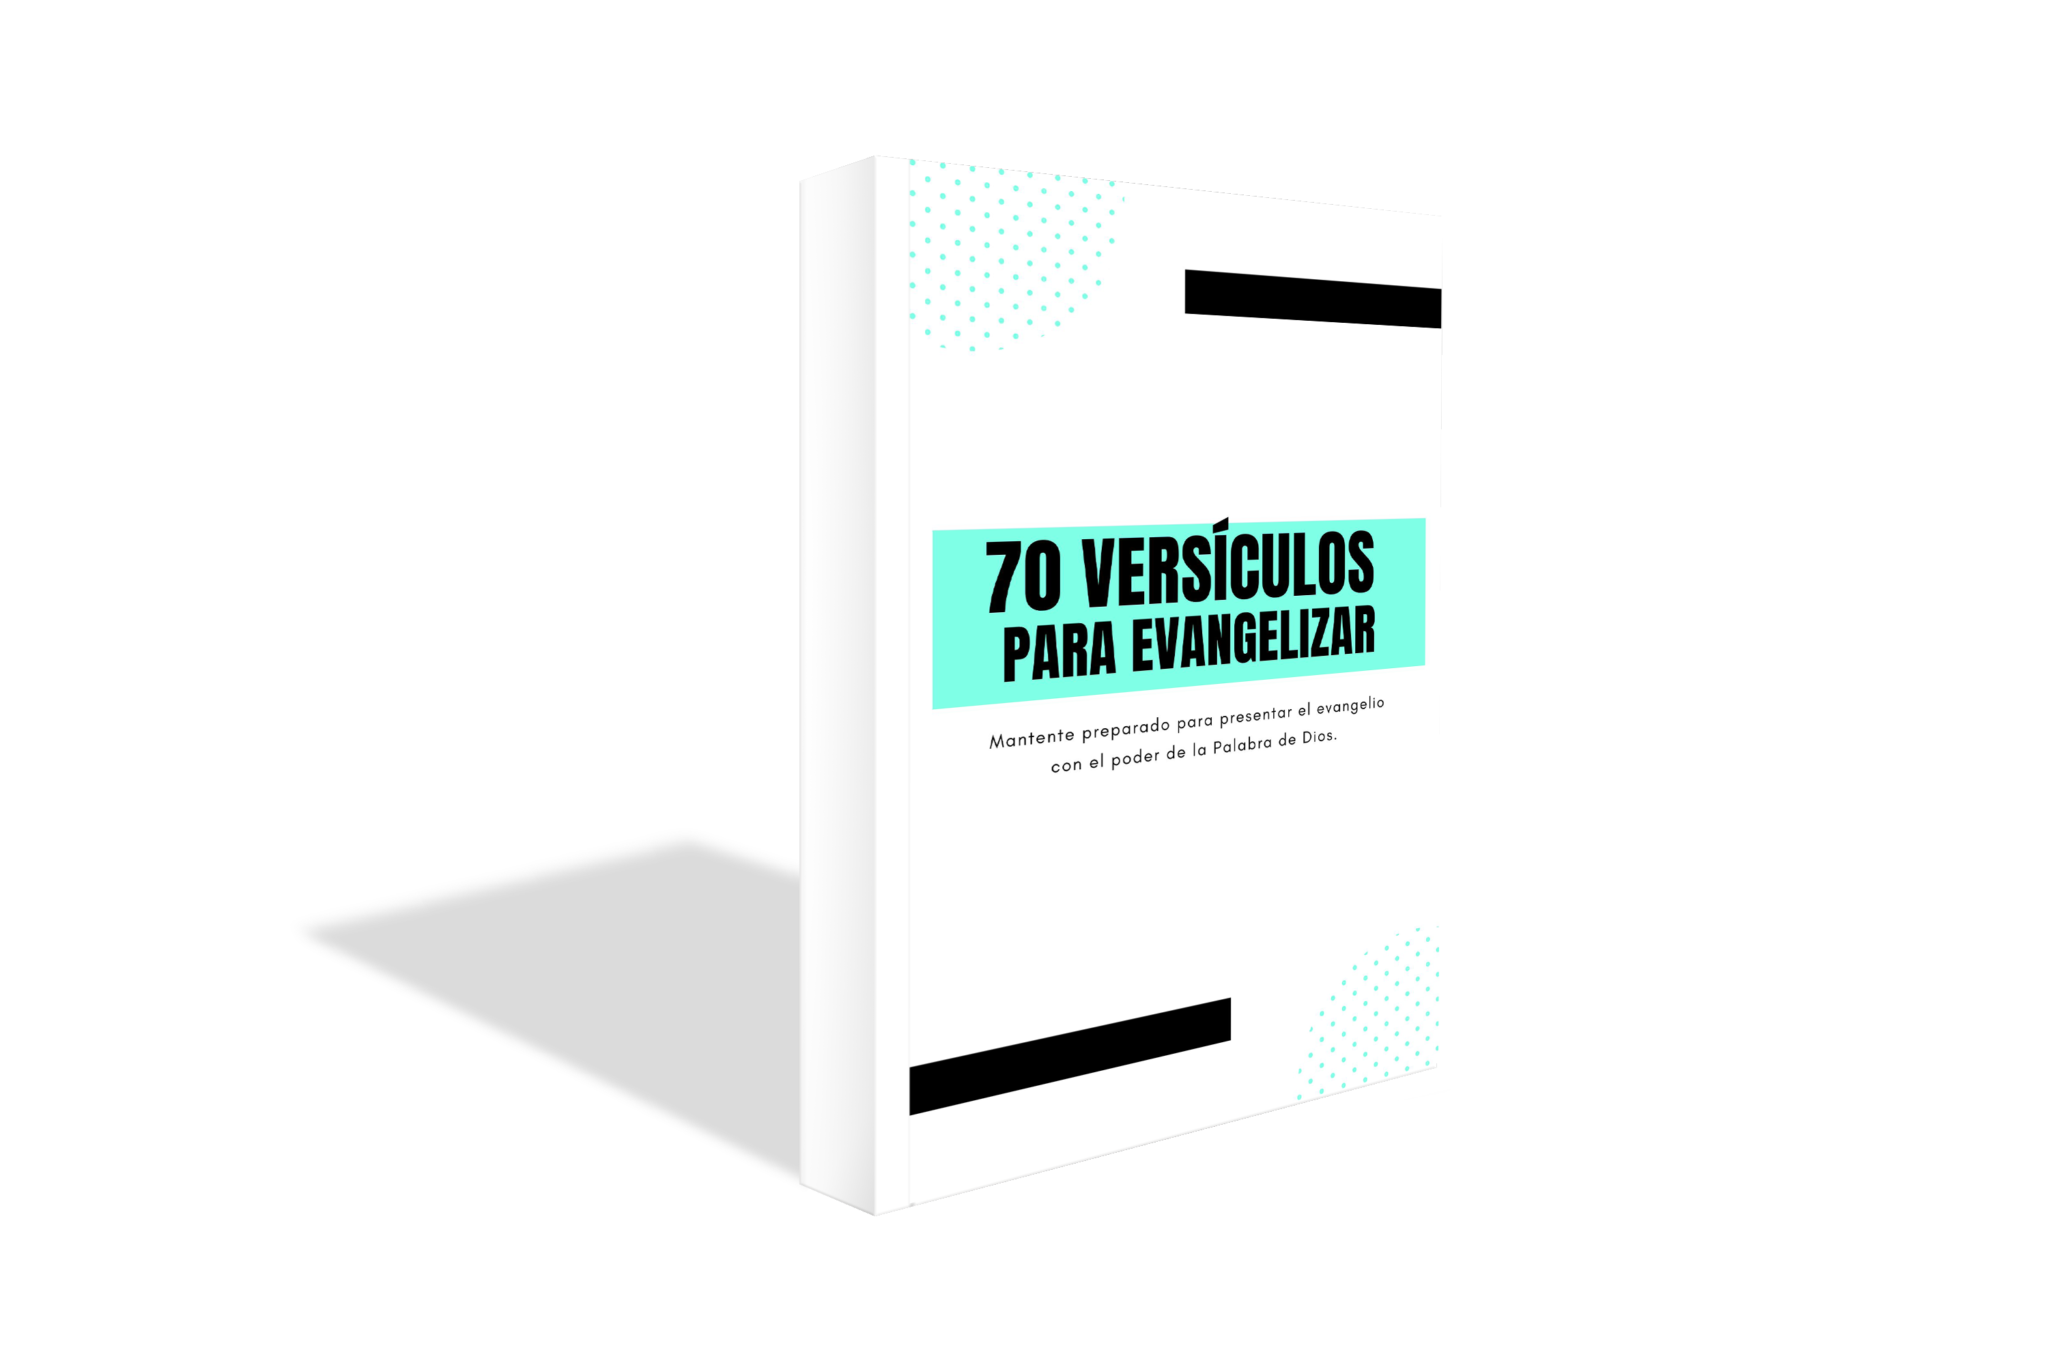 70 versiculos para evangelizar